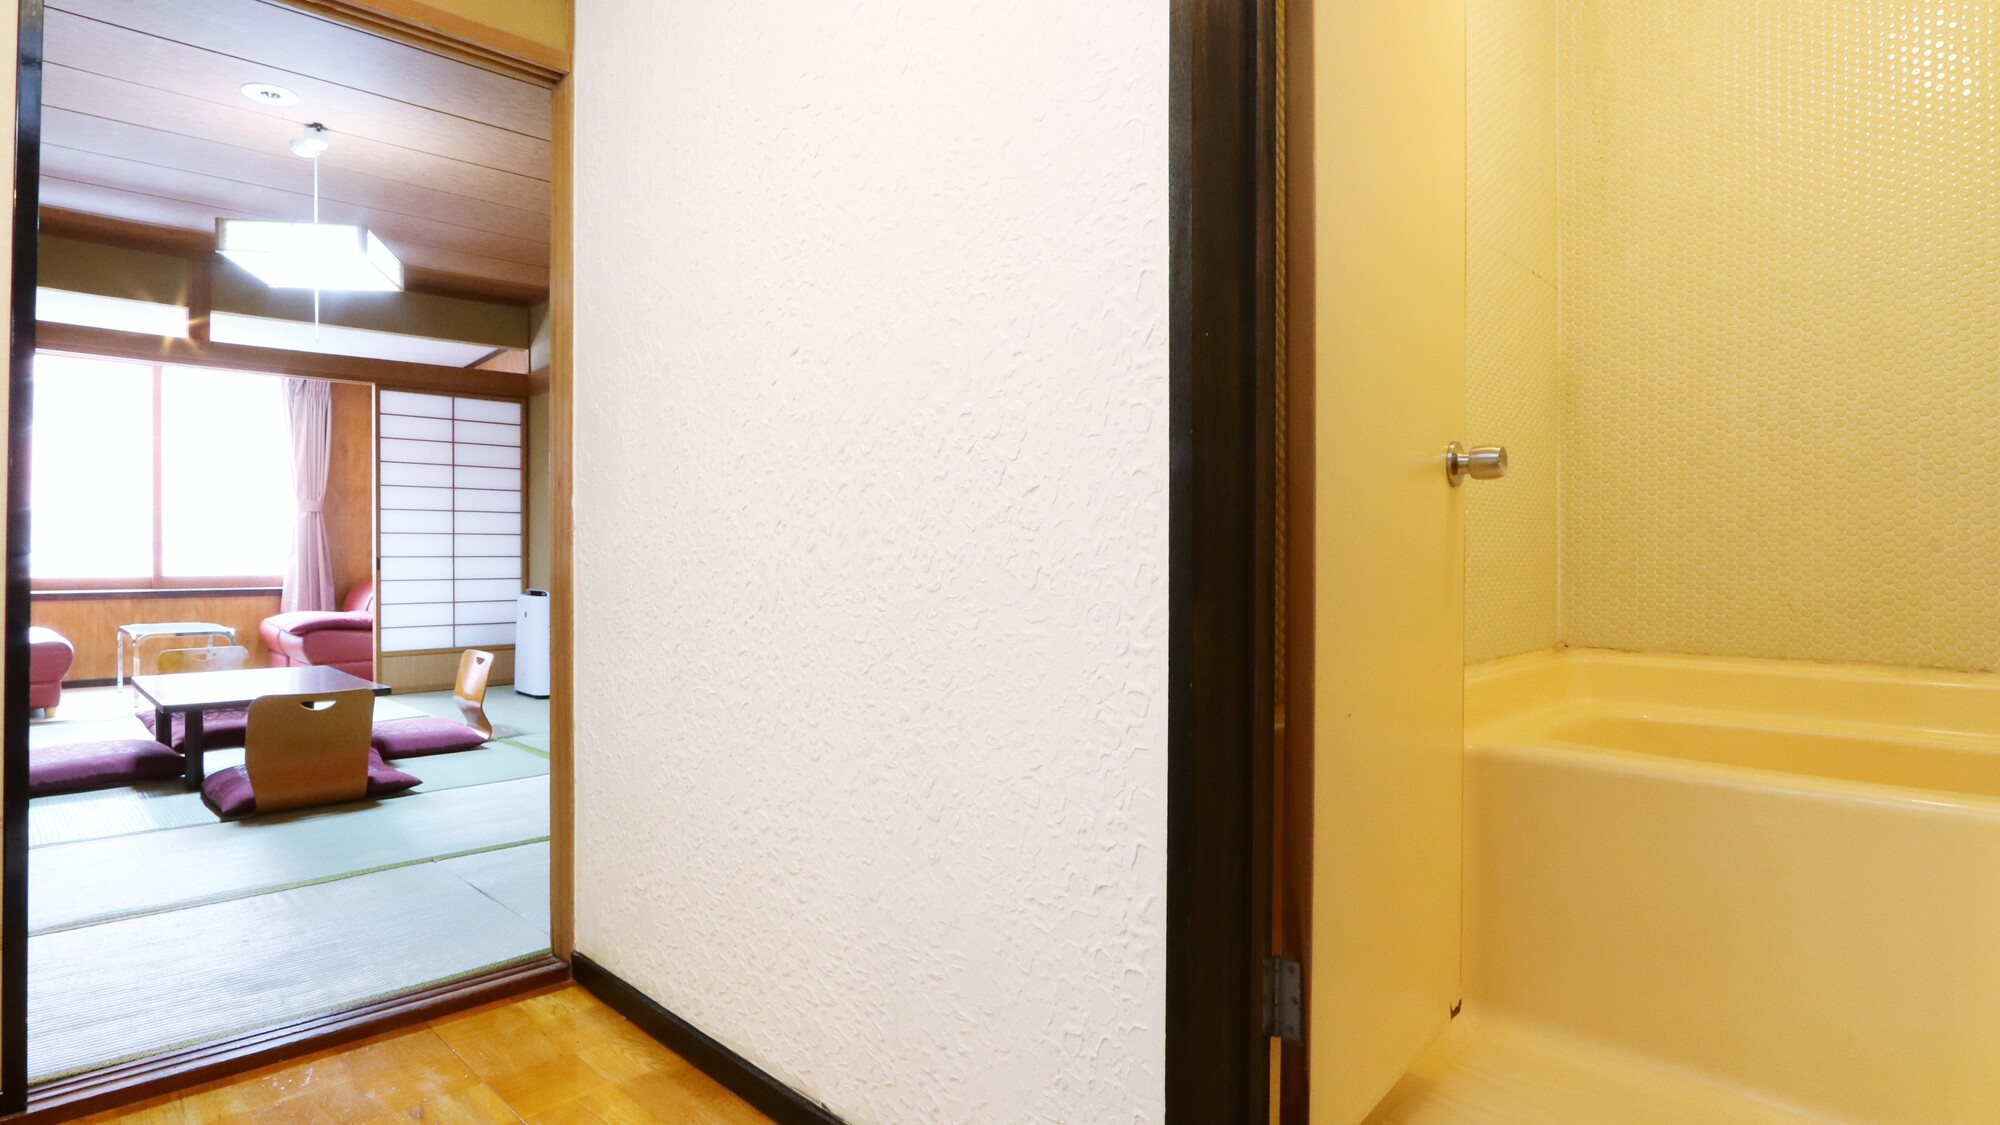 【客室】和室10畳バストイレ付き。大浴場と併せてご利用ください。